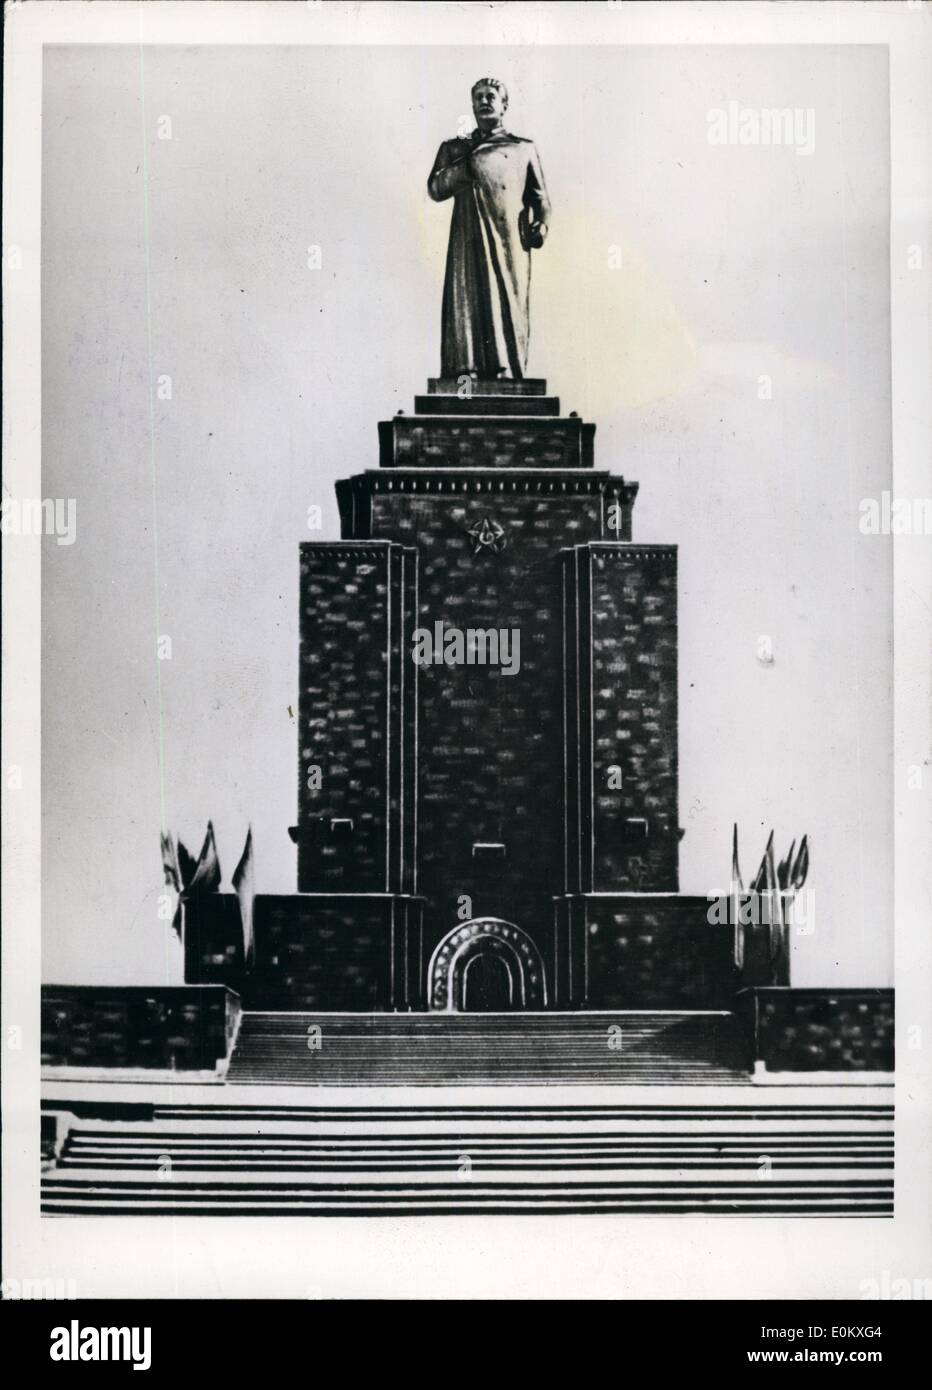 01 janvier 1951 - statue de Staline à Erevan, Arménie soviétique : une statue géante de Joseph Staline a été inauguré dans la capitale de l'Arménie soviétique, Erevan. La statue est l'œuvre de l'architecte R. Israelyan érigée à l'intérieur du musée national dans la mémoire locale de la ''Grande Guerre Padriotic'' (LA DEUXIÈME GUERRE MONDIALE) Banque D'Images